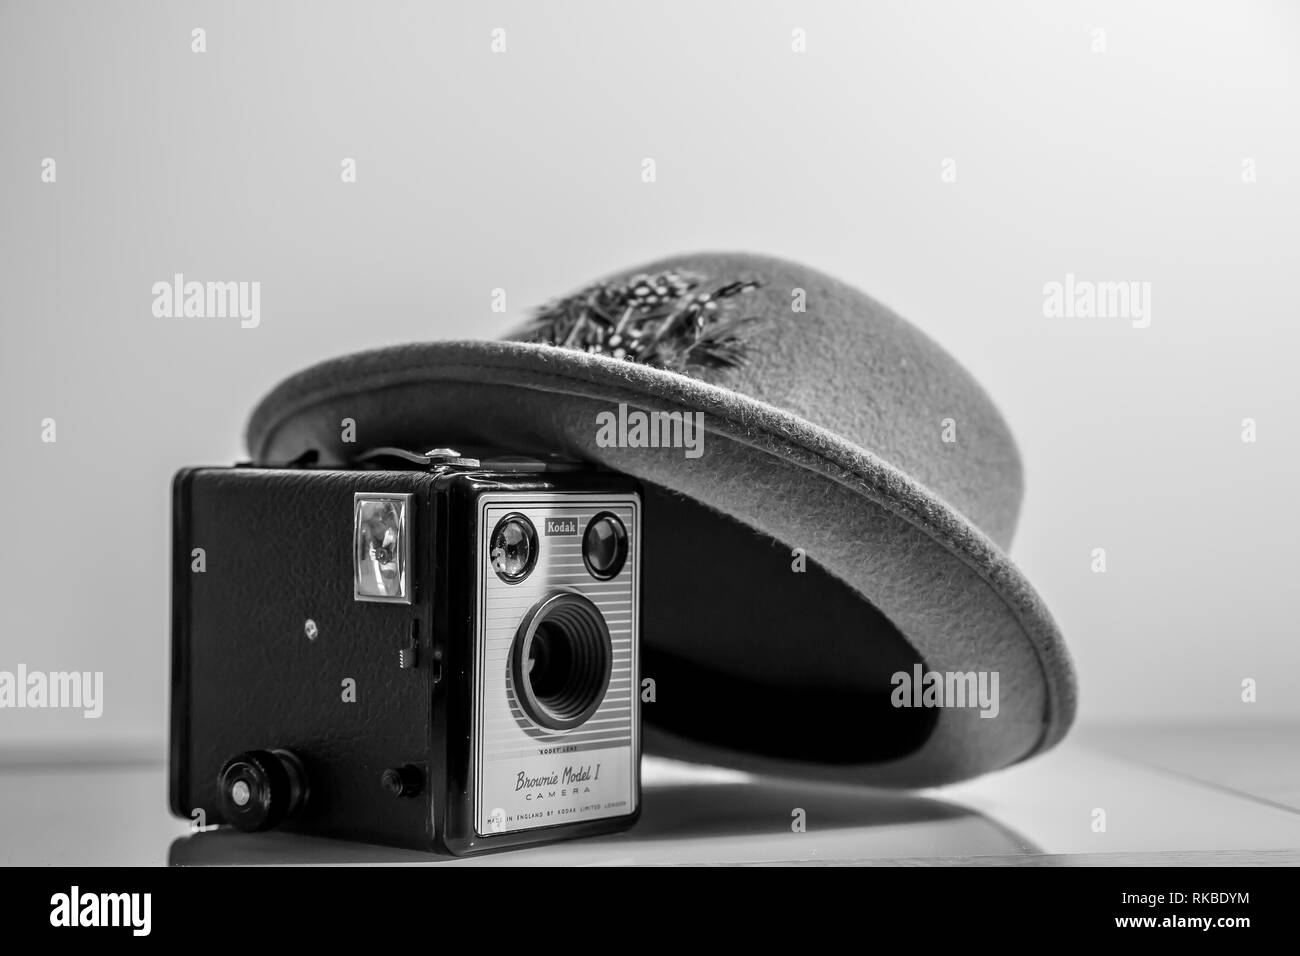 Schwarz-weiß, Nahaufnahme des alten Fedora/Trilby-Hutes der 50er Jahre, angelehnt an die alte, alte Kodak Box Brownie Kamera (Modell 1) aus derselben Zeit. Stockfoto